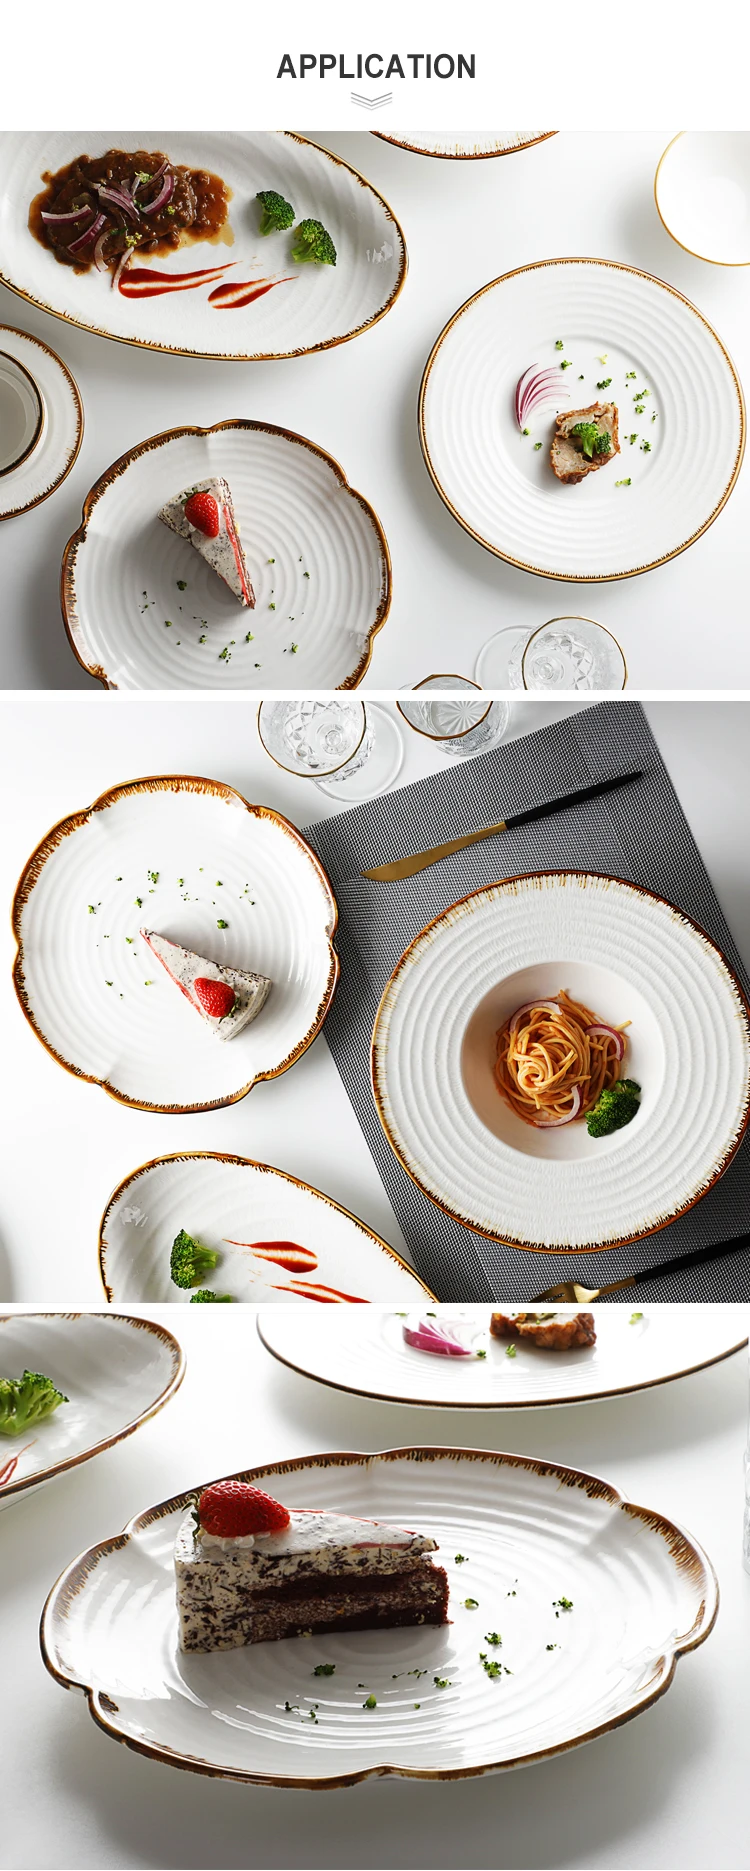 Resort Tableware Ceramic, Luxury Ceramic Dinner Set For Hotel, Ceramic Dinner Set Dinnerware$